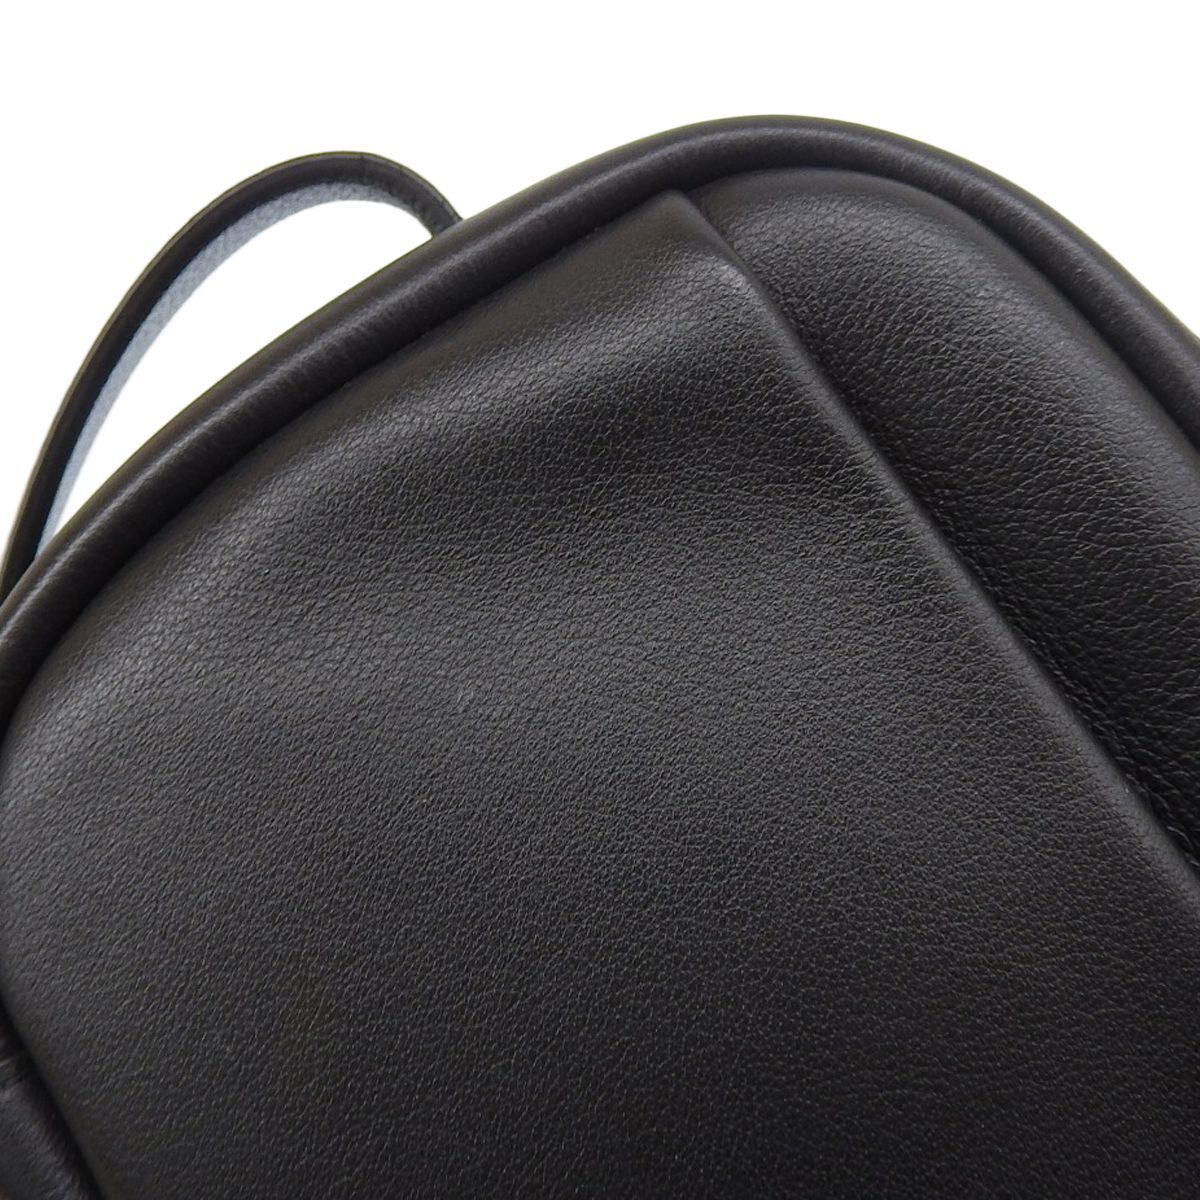  Balenciaga BALENCIAGA камера сумка сумка на плечо кожа черный женский мужской 4132